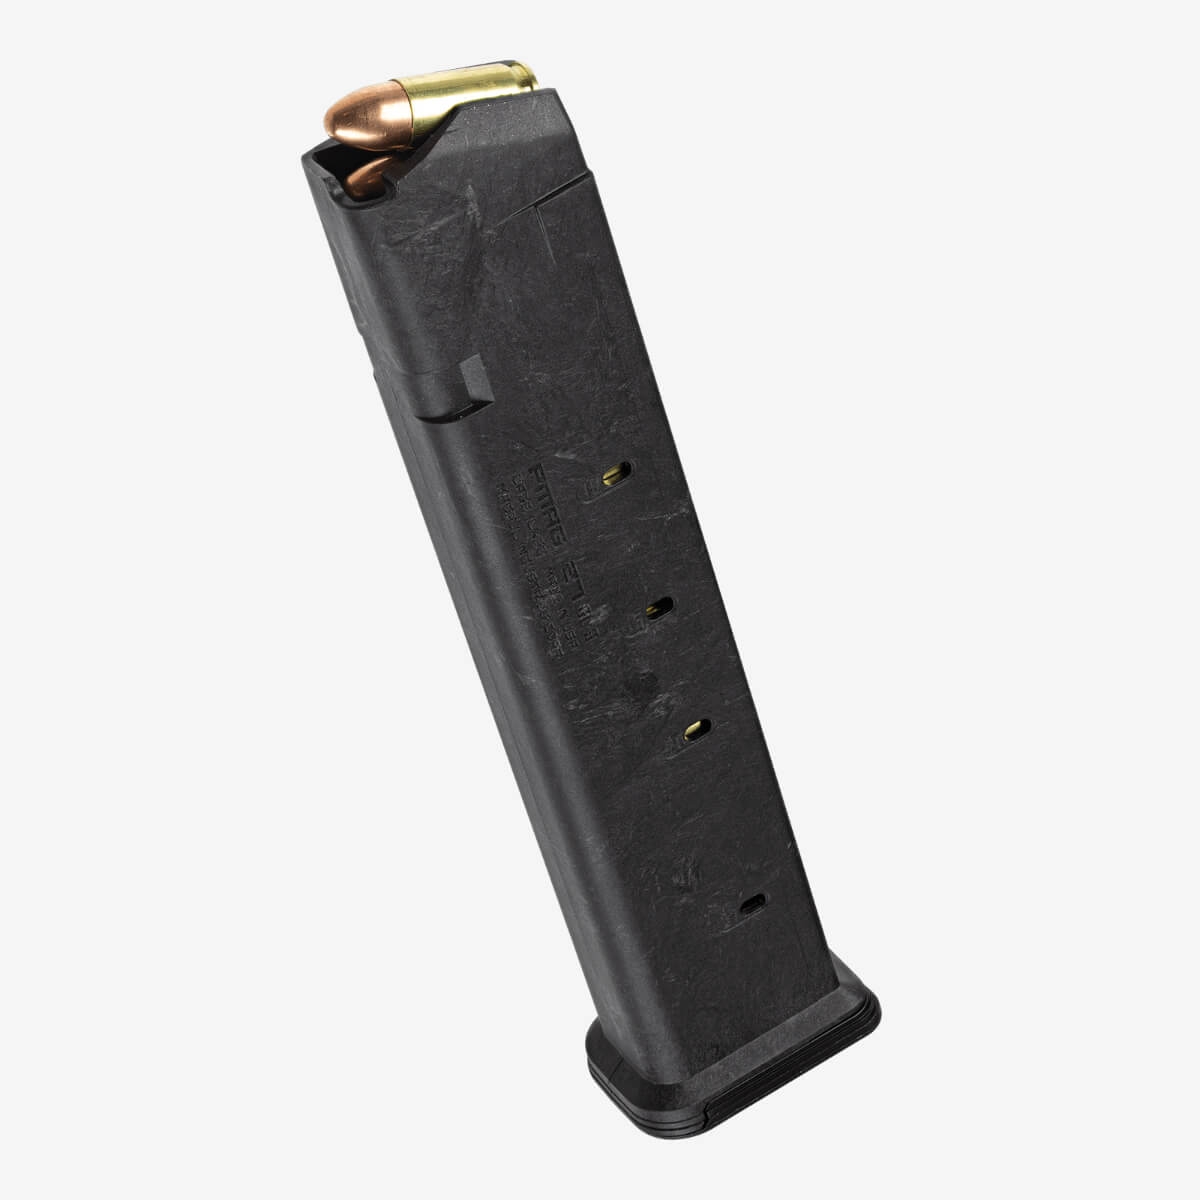 PMAG 27 GL9, 9x19 – Glock